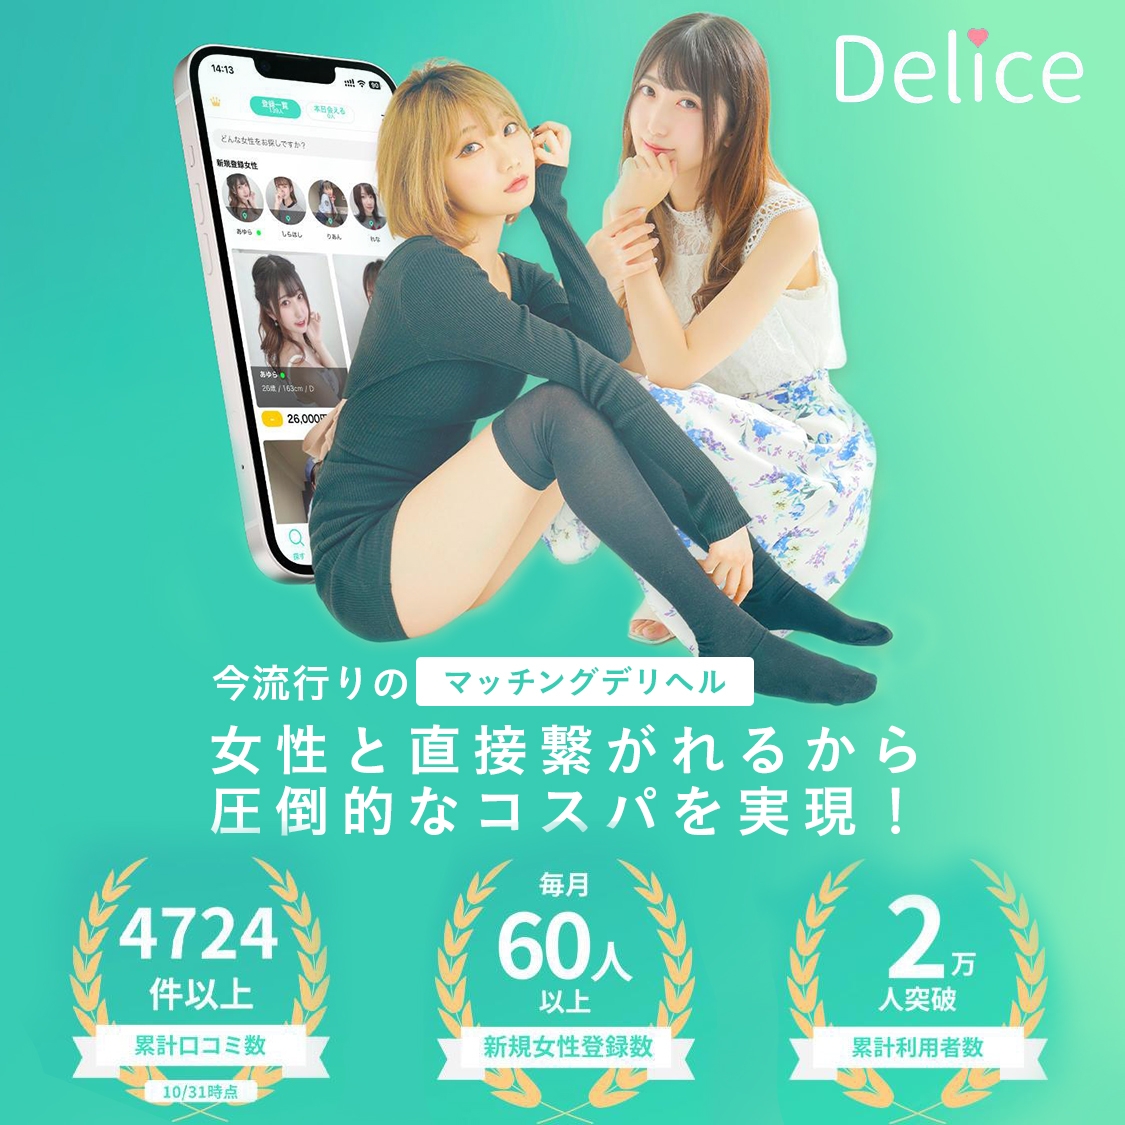 Delice(デリス)新宿店